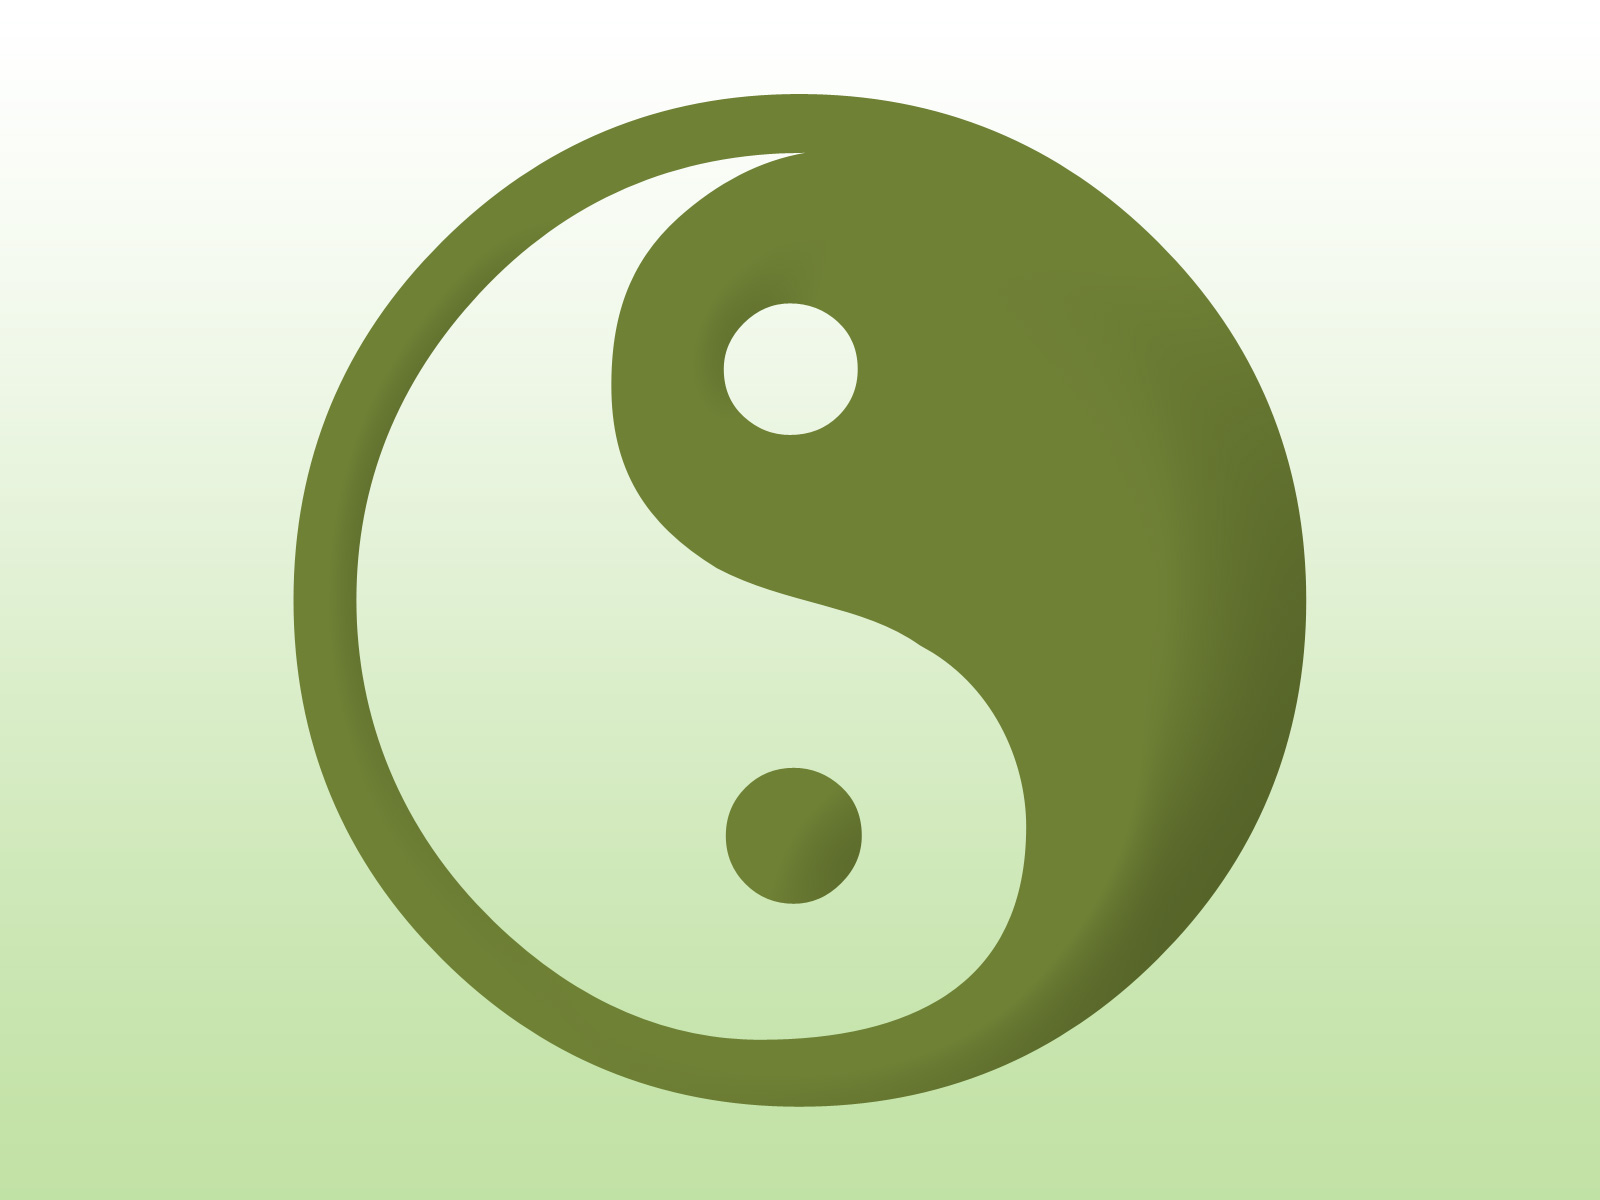 Yin yang symbol icon on green